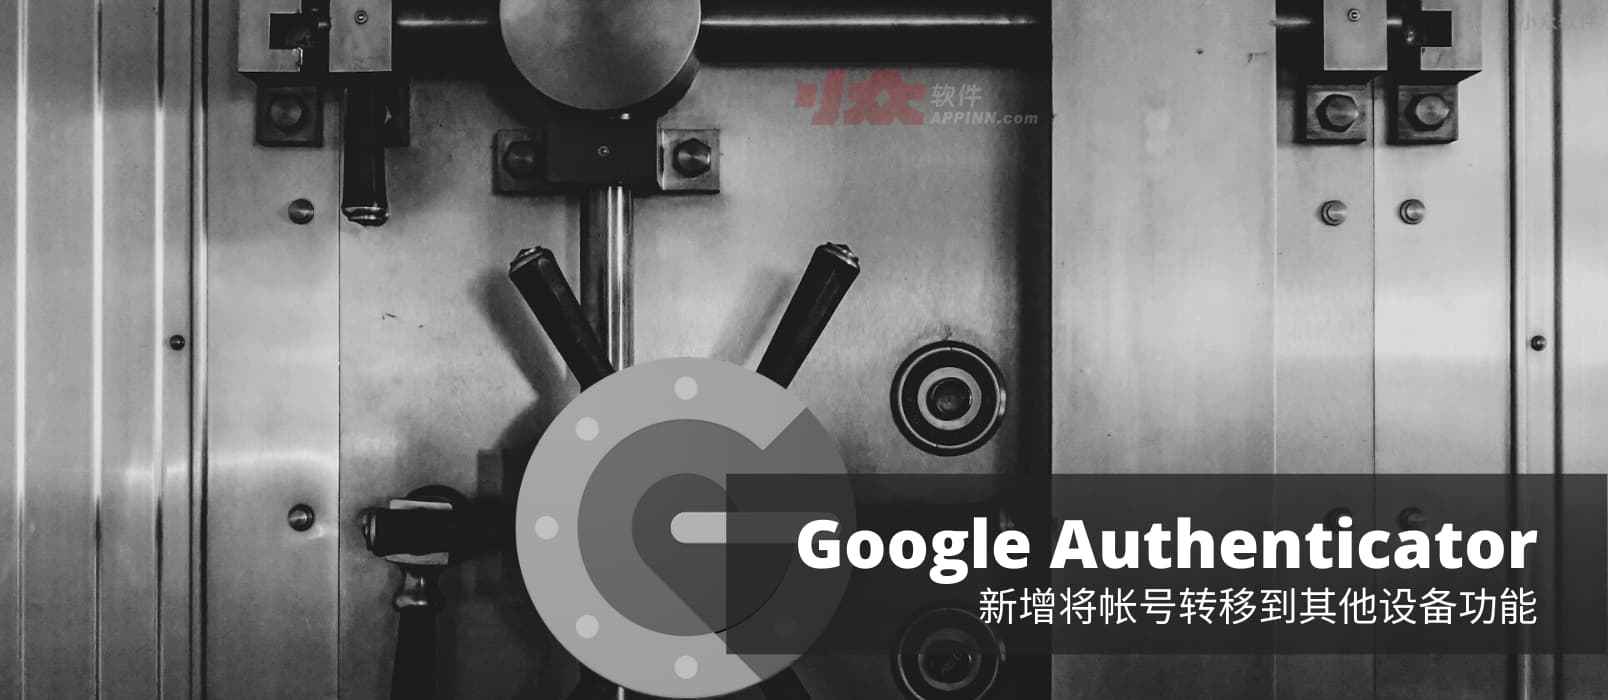 二次验证应用 Google Authenticator 支持转移帐号（验证码）功能，换机不再是噩梦[Android] 1